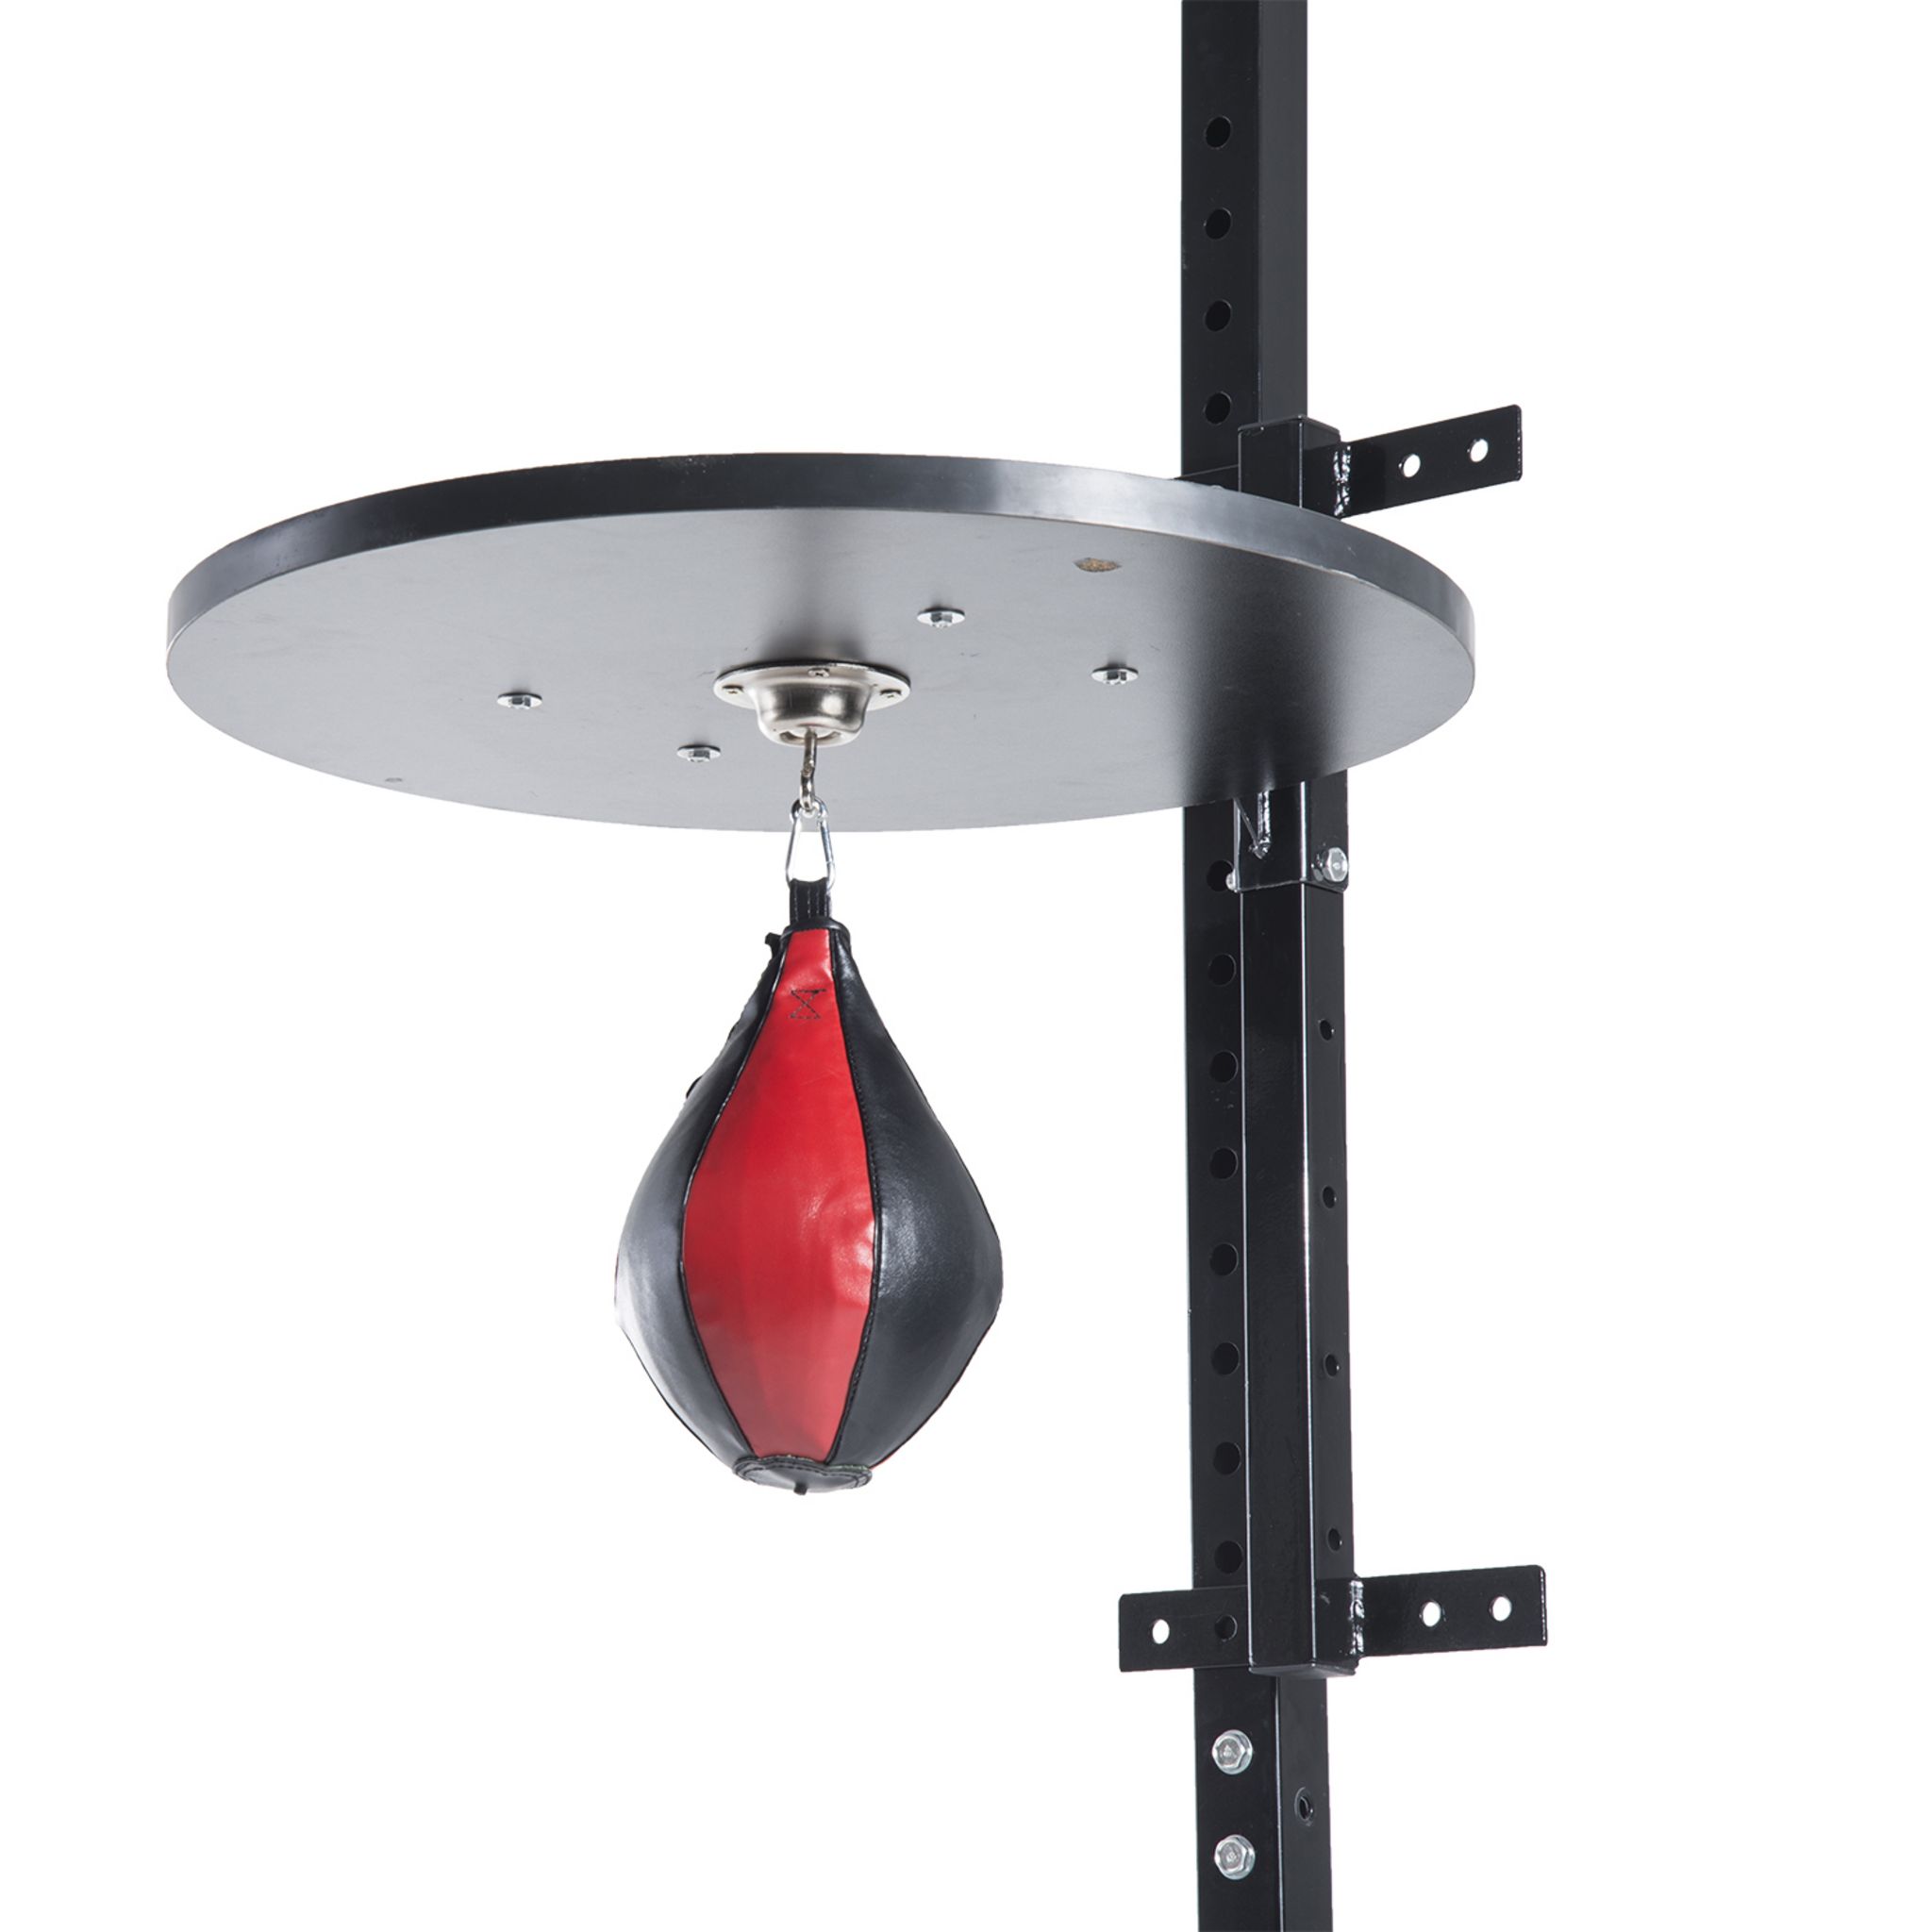 Punching ball poire de vitesse boxe avec support plateau tournant + pompe  mdf acier revêtement synthétique rouge noir - Conforama